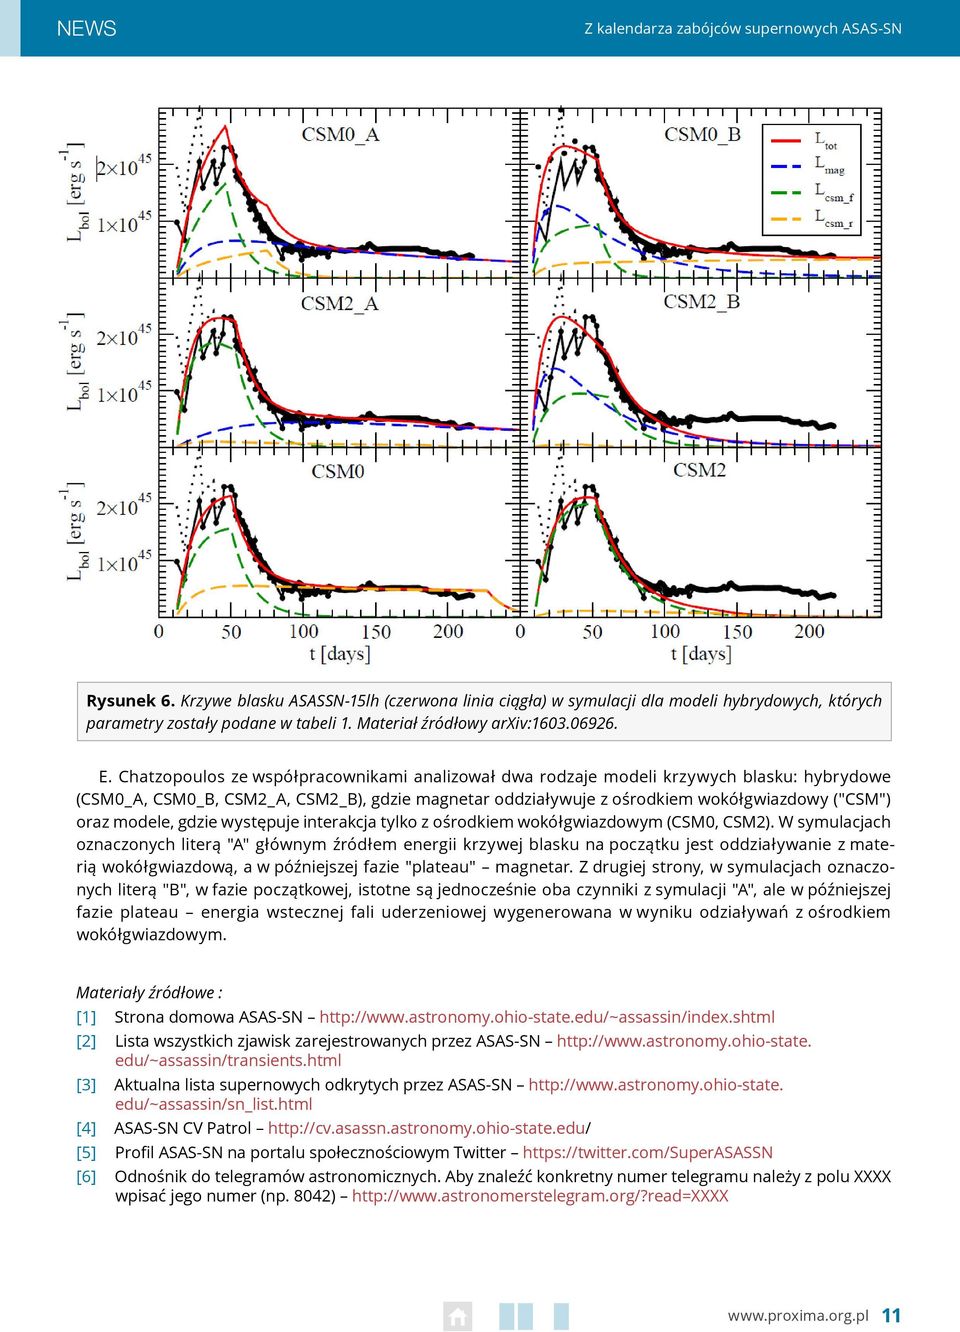 Chatzopoulos ze współpracownikami analizował dwa rodzaje modeli krzywych blasku: hybrydowe (CSM0_A, CSM0_B, CSM2_A, CSM2_B), gdzie magnetar oddziaływuje z ośrodkiem wokółgwiazdowy ("CSM") oraz